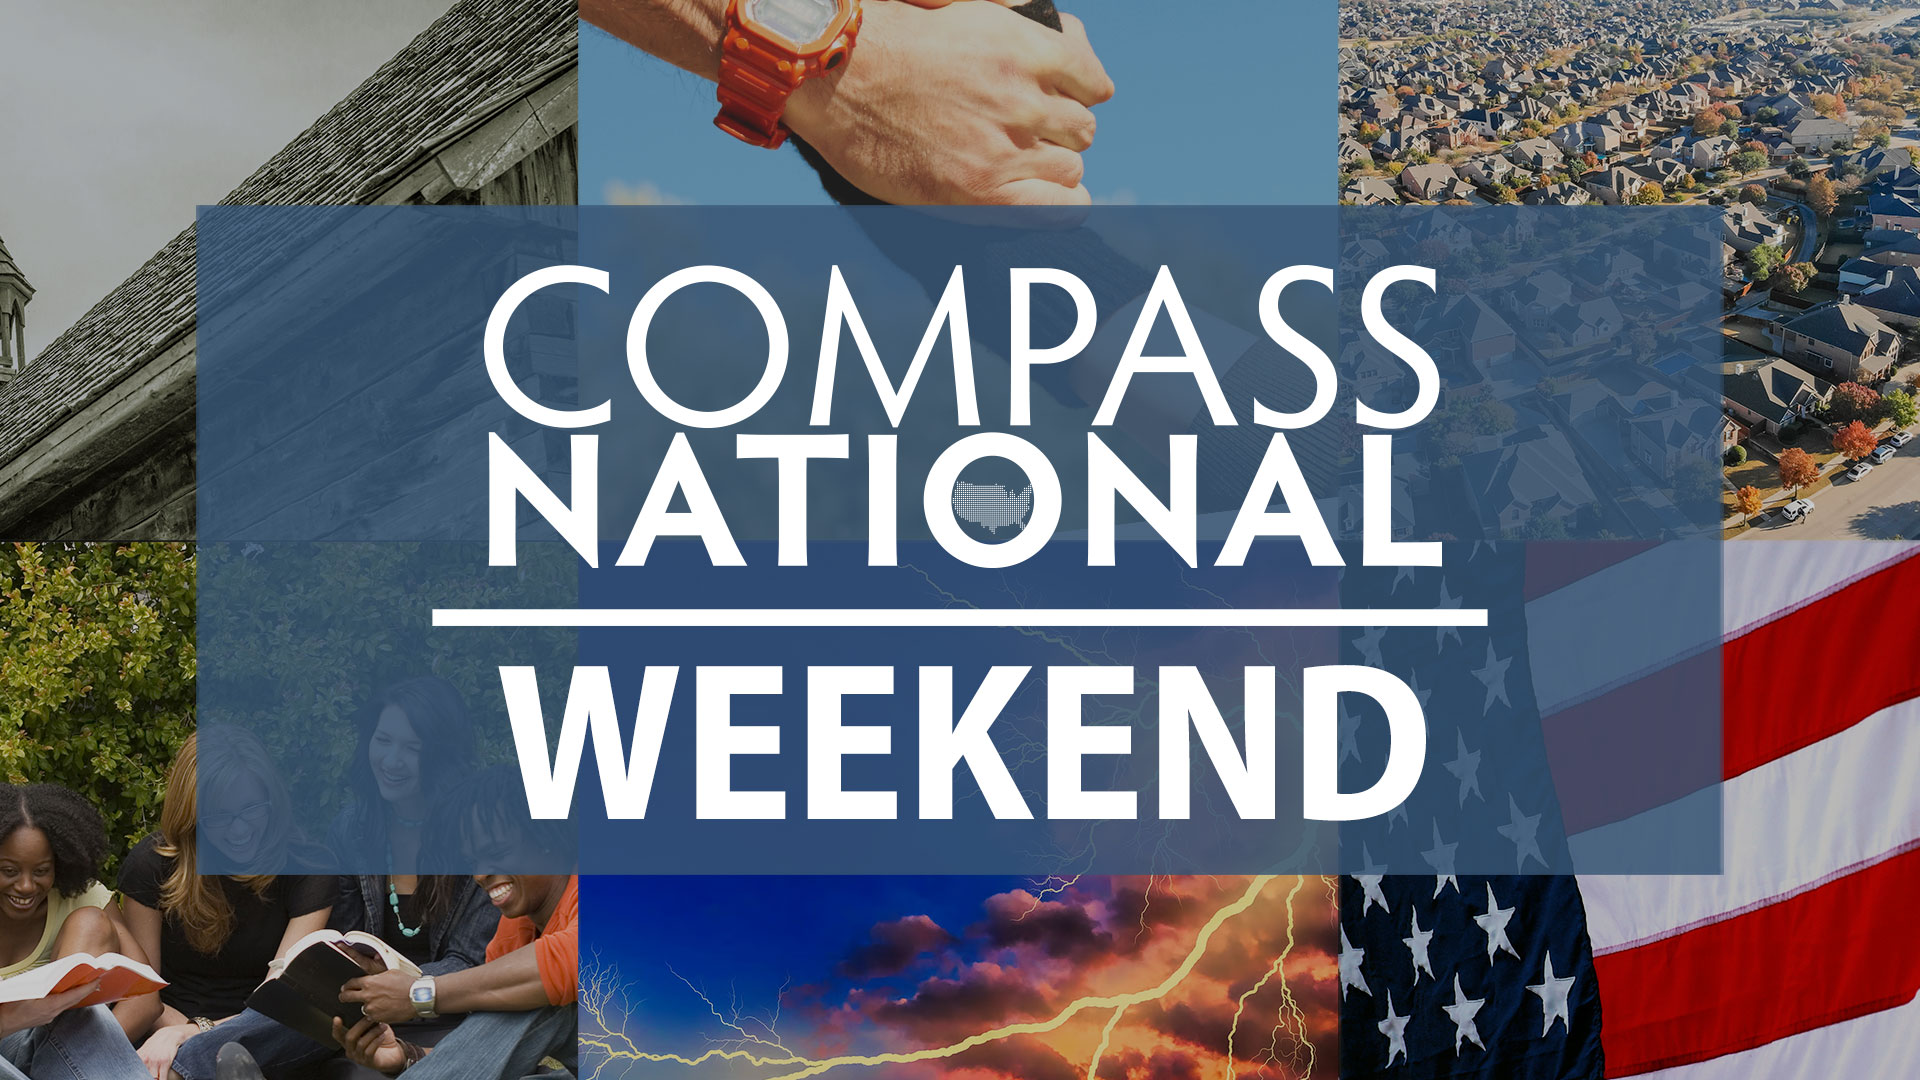 CompassNational Weekend